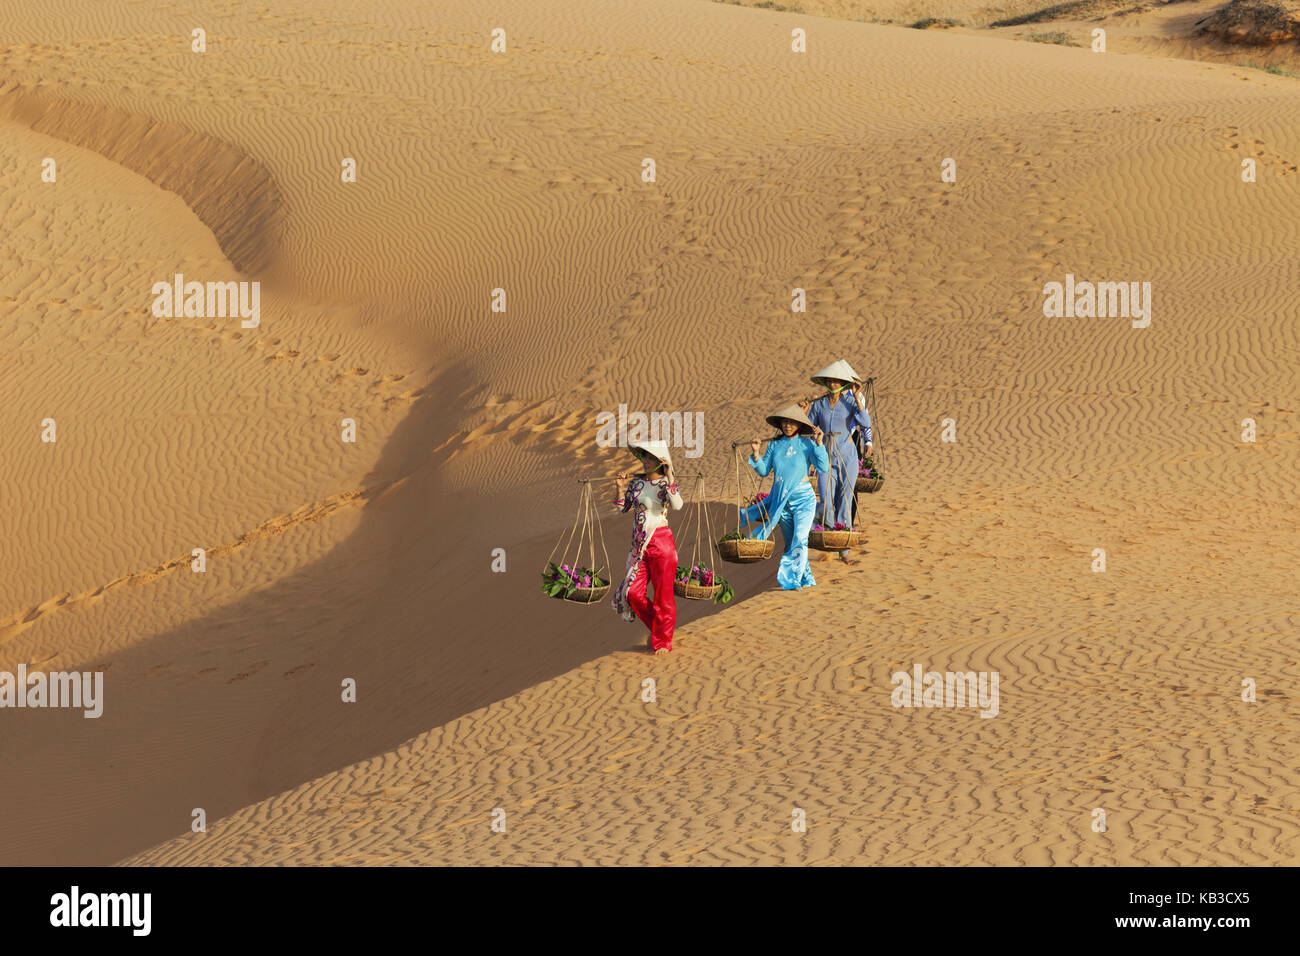 Il Vietnam, mui ne, dune di sabbia, le donne portano i costi, Foto Stock